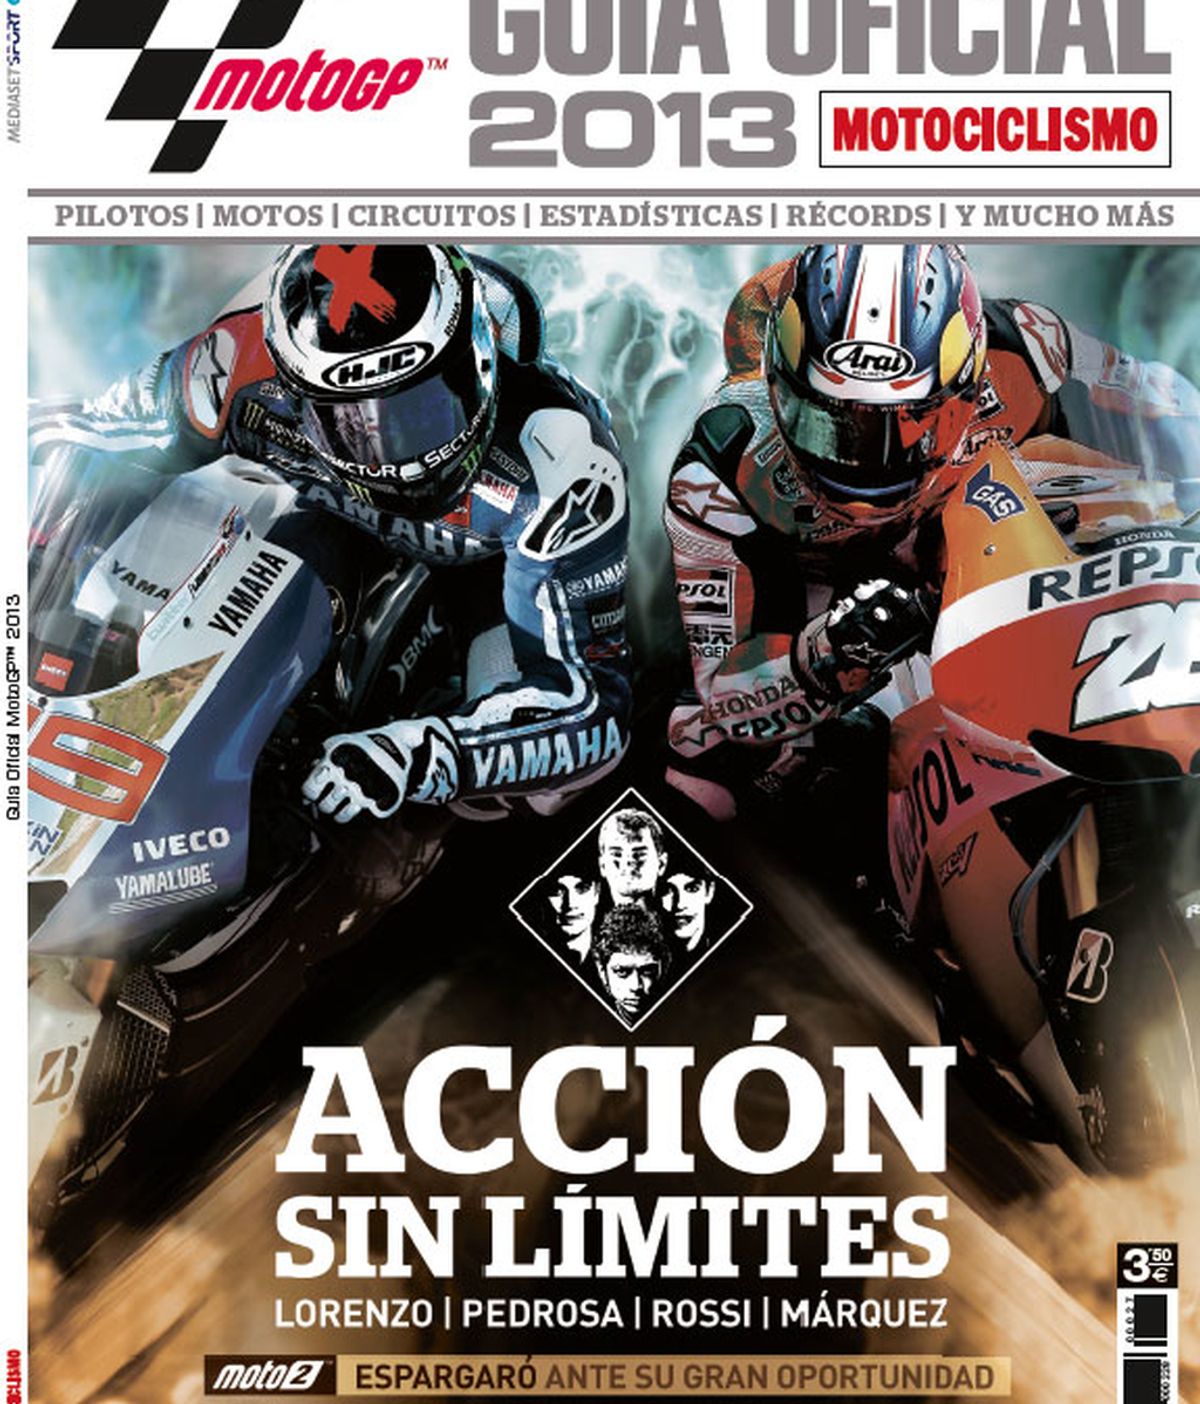 Moto GP, Guía oficial 2013 - Motociclismo